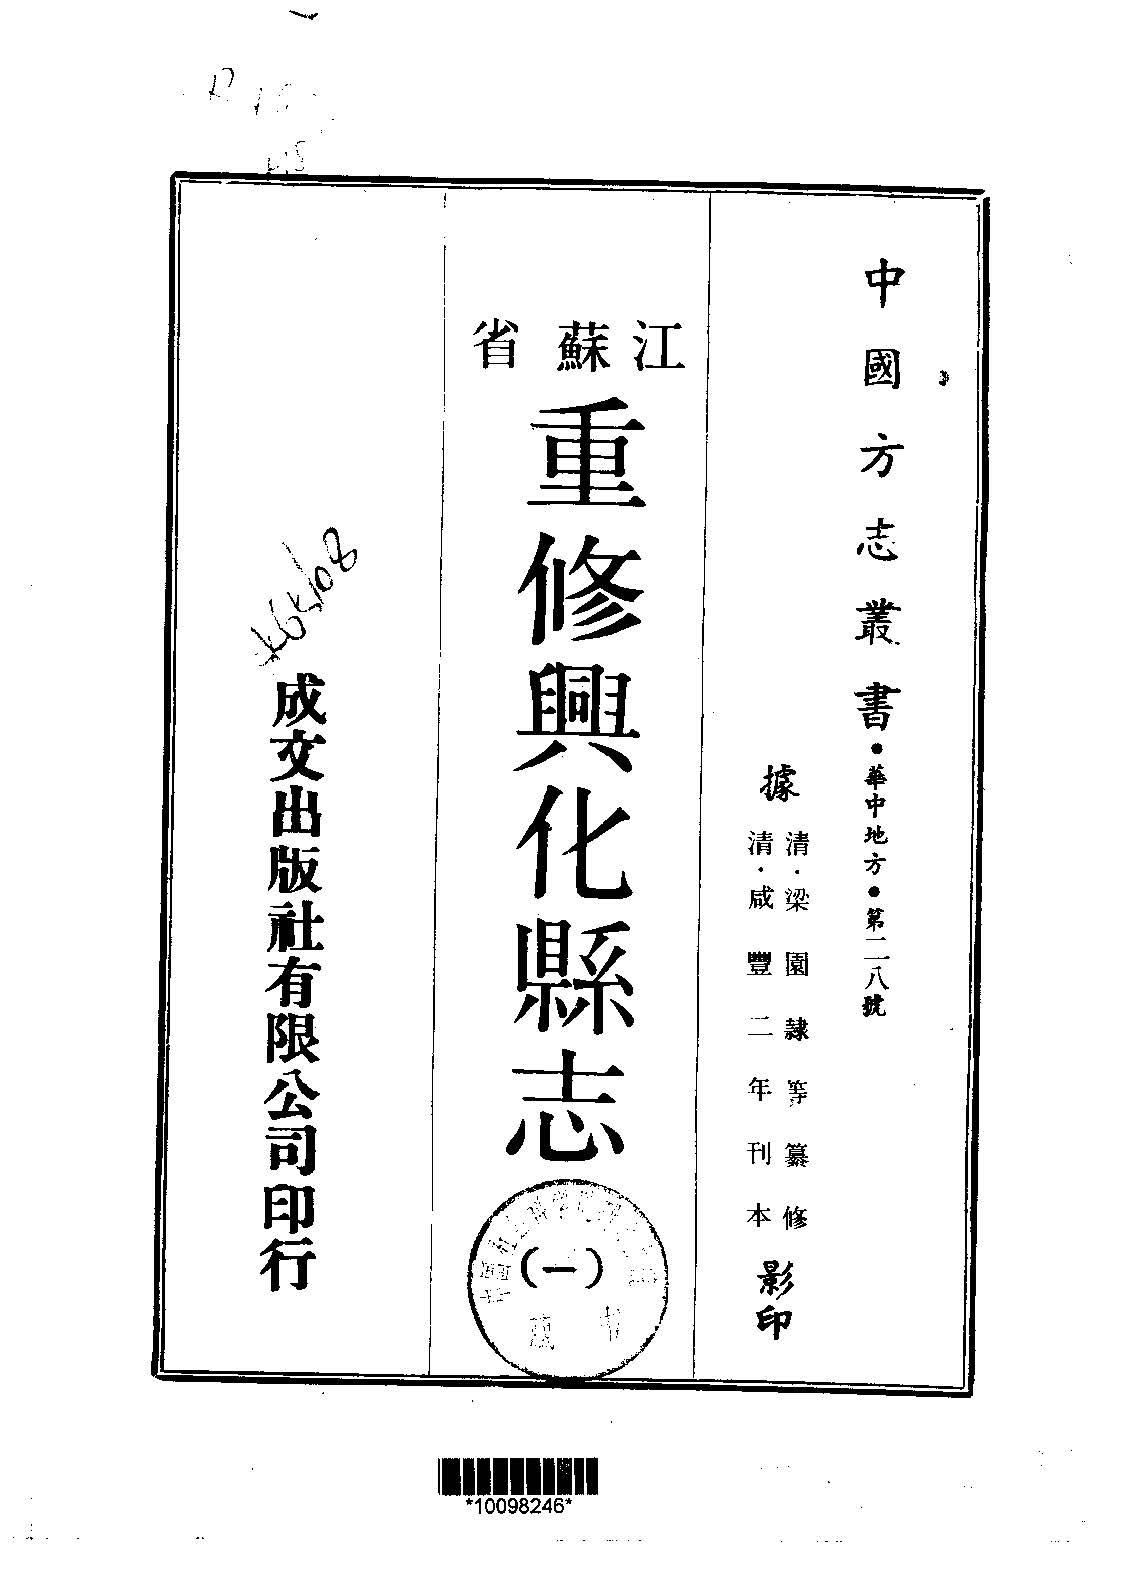 重修兴化县志的书籍封面